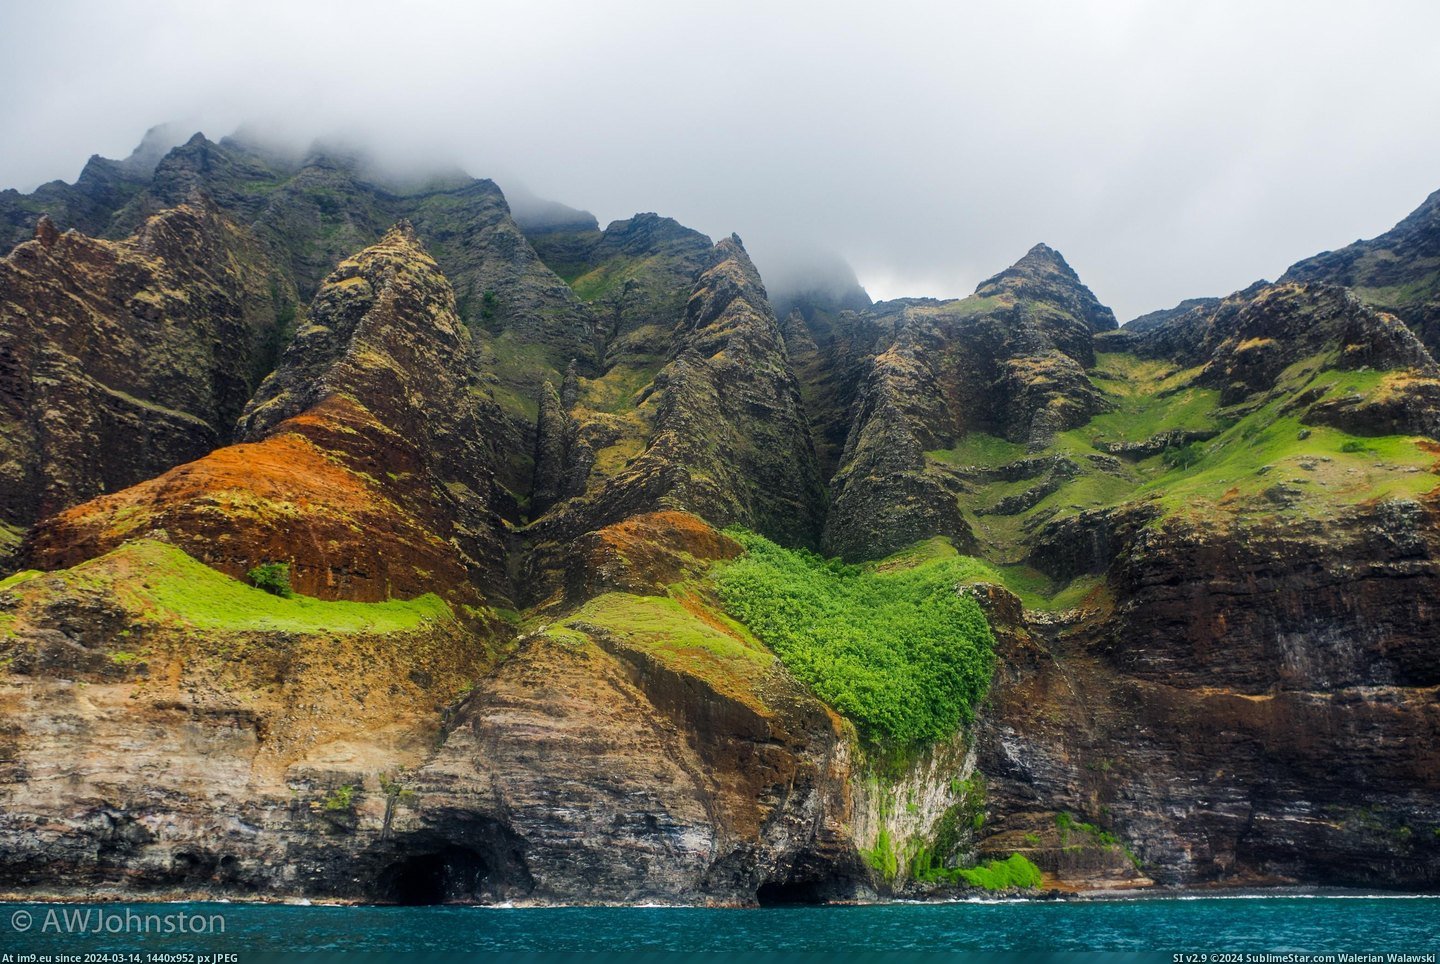 #Cliffs #Seaside #Kaua #Foggy #Caves [Earthporn] Seaside caves under foggy cliffs. Kaua'i, HI [3126x2078][OC] Pic. (Image of album My r/EARTHPORN favs))